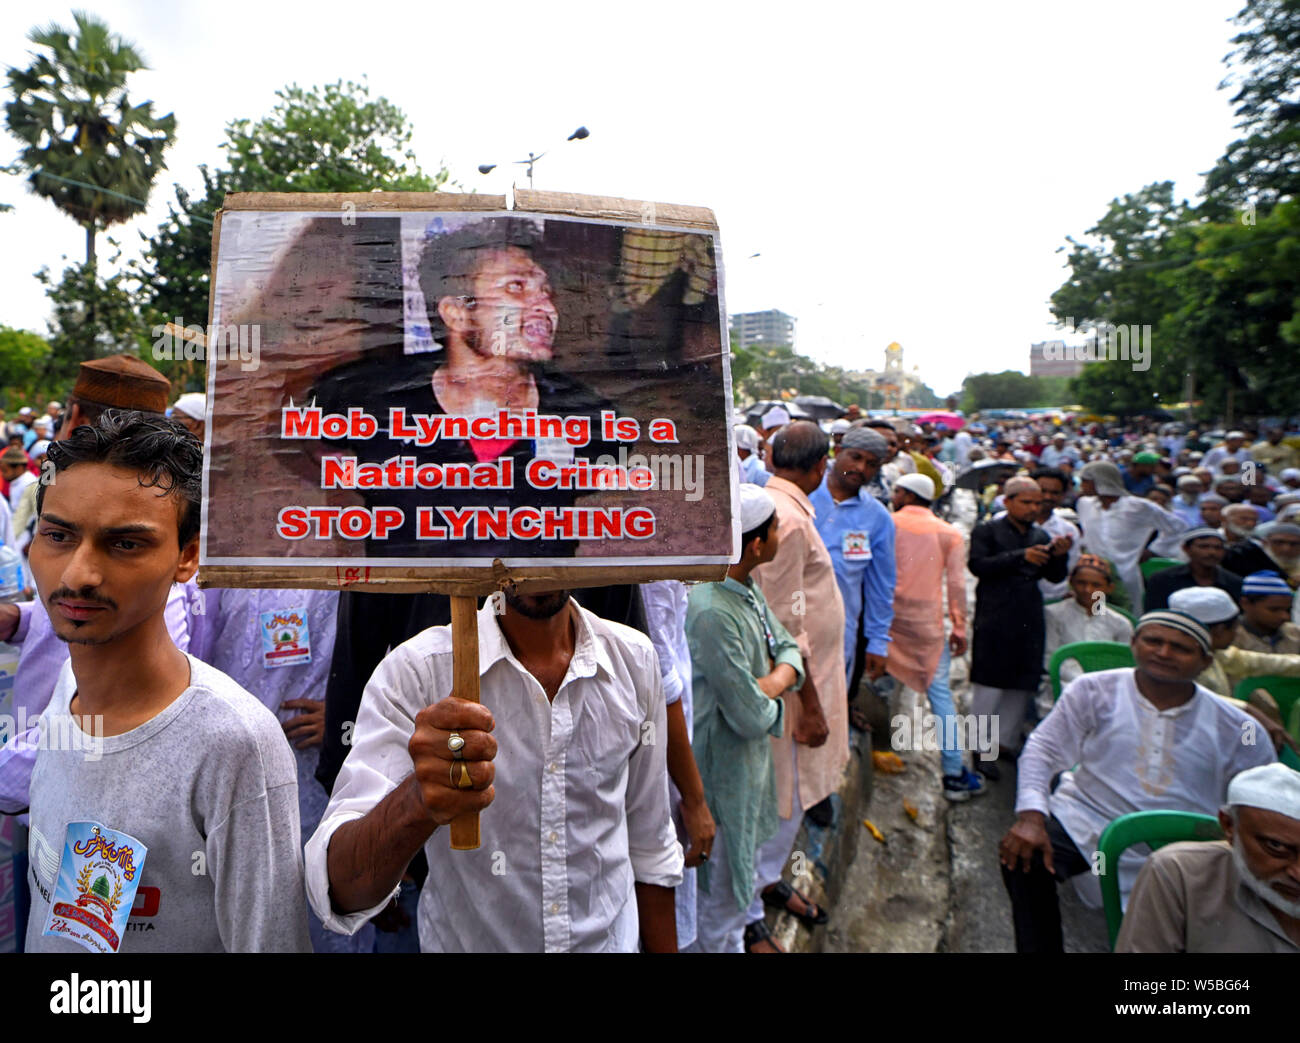 Ein Anhänger der Majlis-e-Ulama-e-Islam in West Bengalen hält ein Plakat während des Protestes in Kalkutta. Protest gegen die jüngsten Mob lynchmord Vorfälle am anderen Teil von Indien, 2019 Hasse, Verbrechen im Namen der Religion ständig zugenommen und störende kommunale Harmonien des Landes in verschiedenen Staaten. Stockfoto